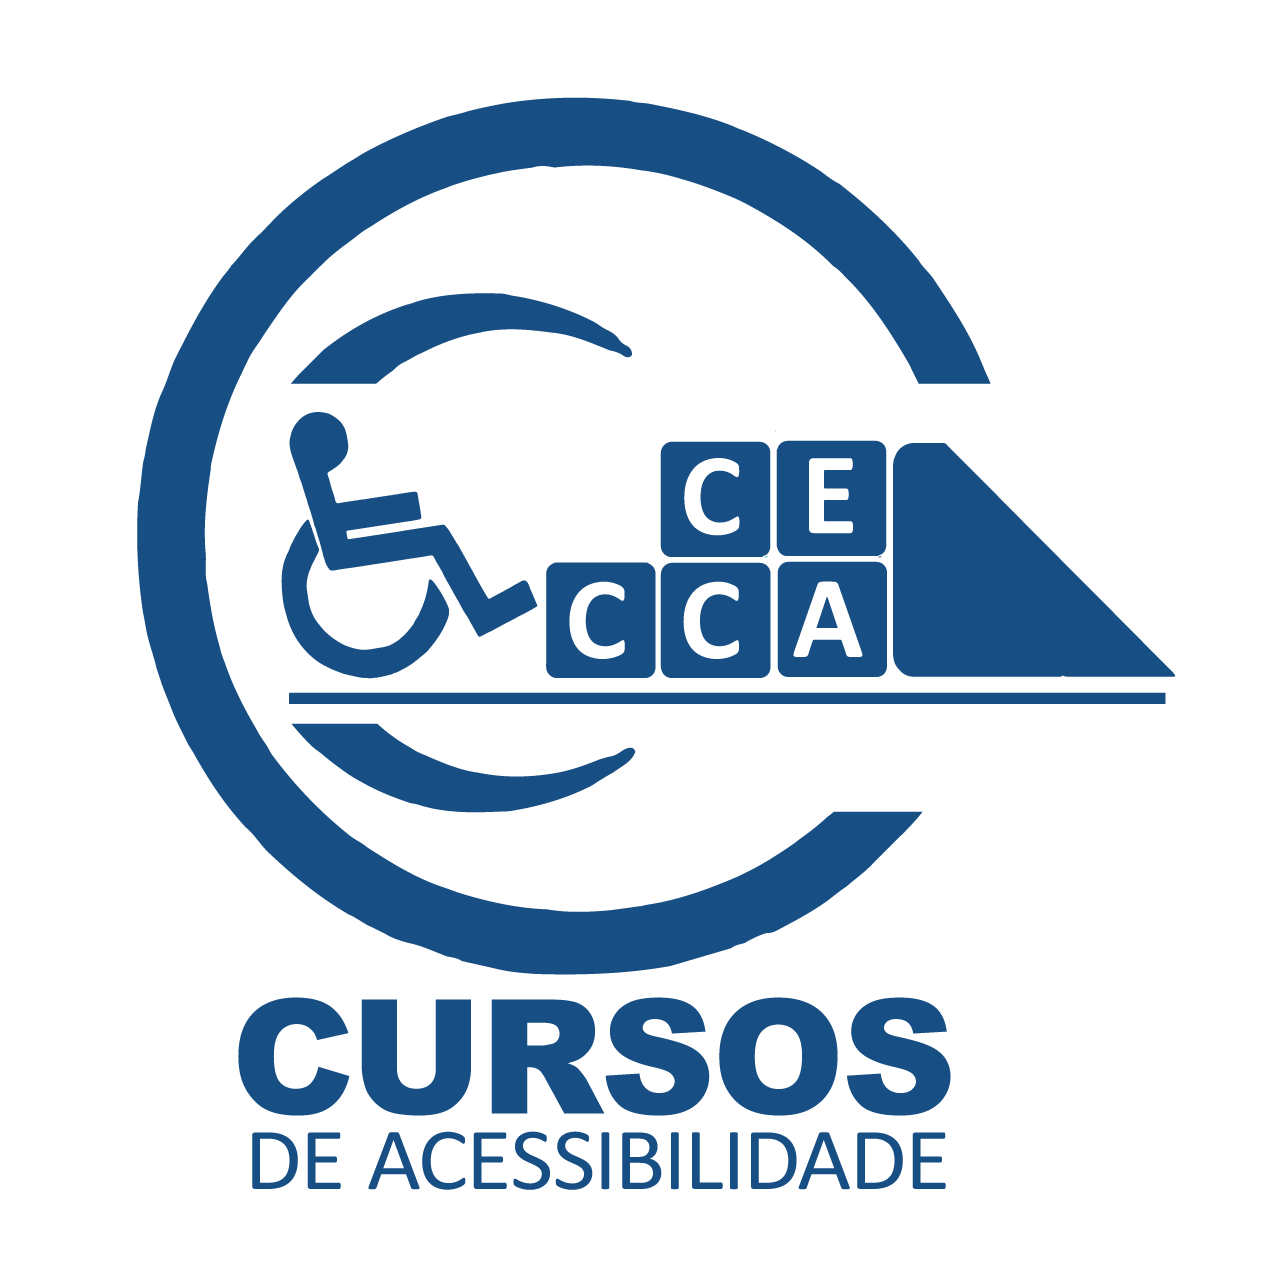 fundo azul com a ilustração do logotipo do Curso CECCA - Curso de Acessibilidade, formam um círculo e com um símbolo de acessibilidade de acesso na cor azul com destaque. 